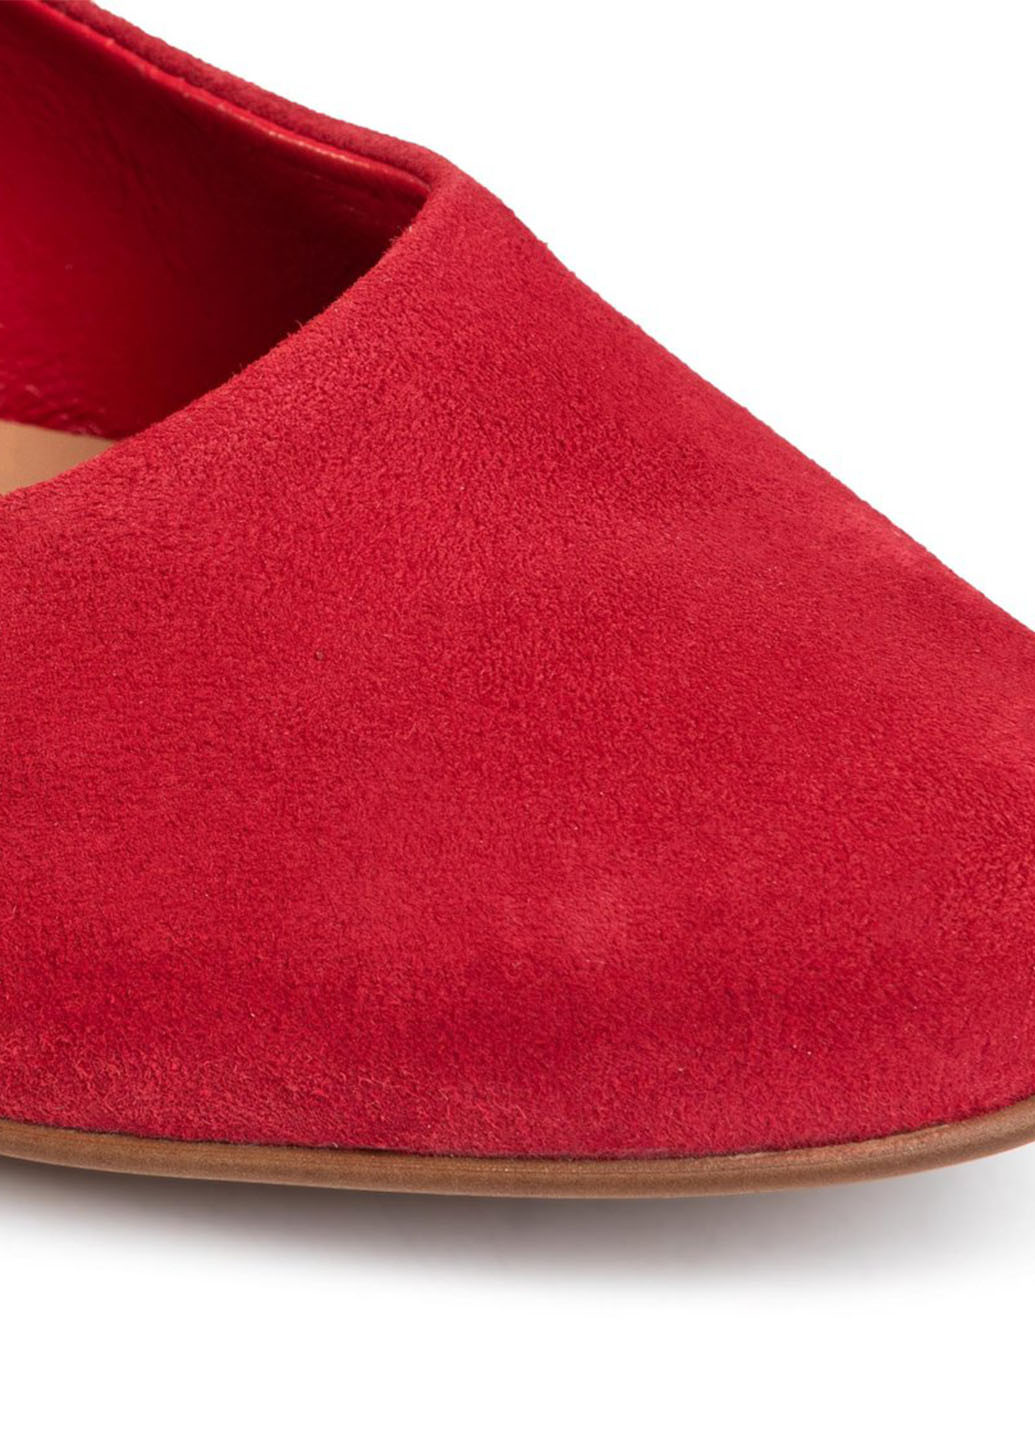 Напівчеревики Lasocki 3064-05 туфлі-човники однотонні червоні кежуали